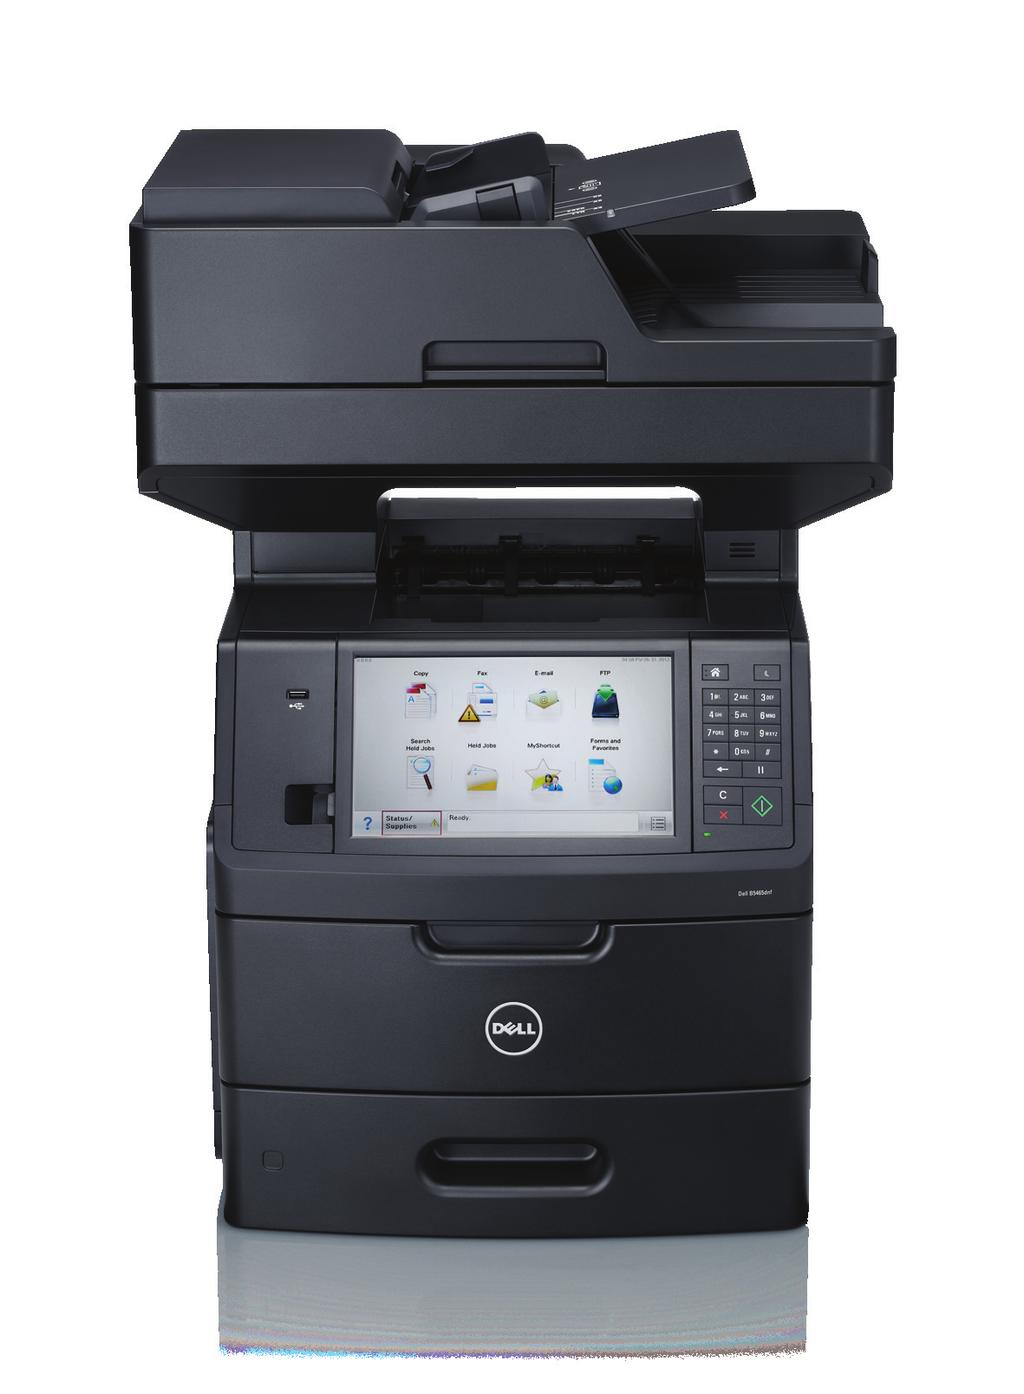 Dell B5465dnf Impresora láser en blanco y negro multifunción Consumibles Capacidad del cartucho de tóner incluida 1 25 000 páginas Cartucho de tóner de capacidad estándar 1 6000 páginas Cartucho de